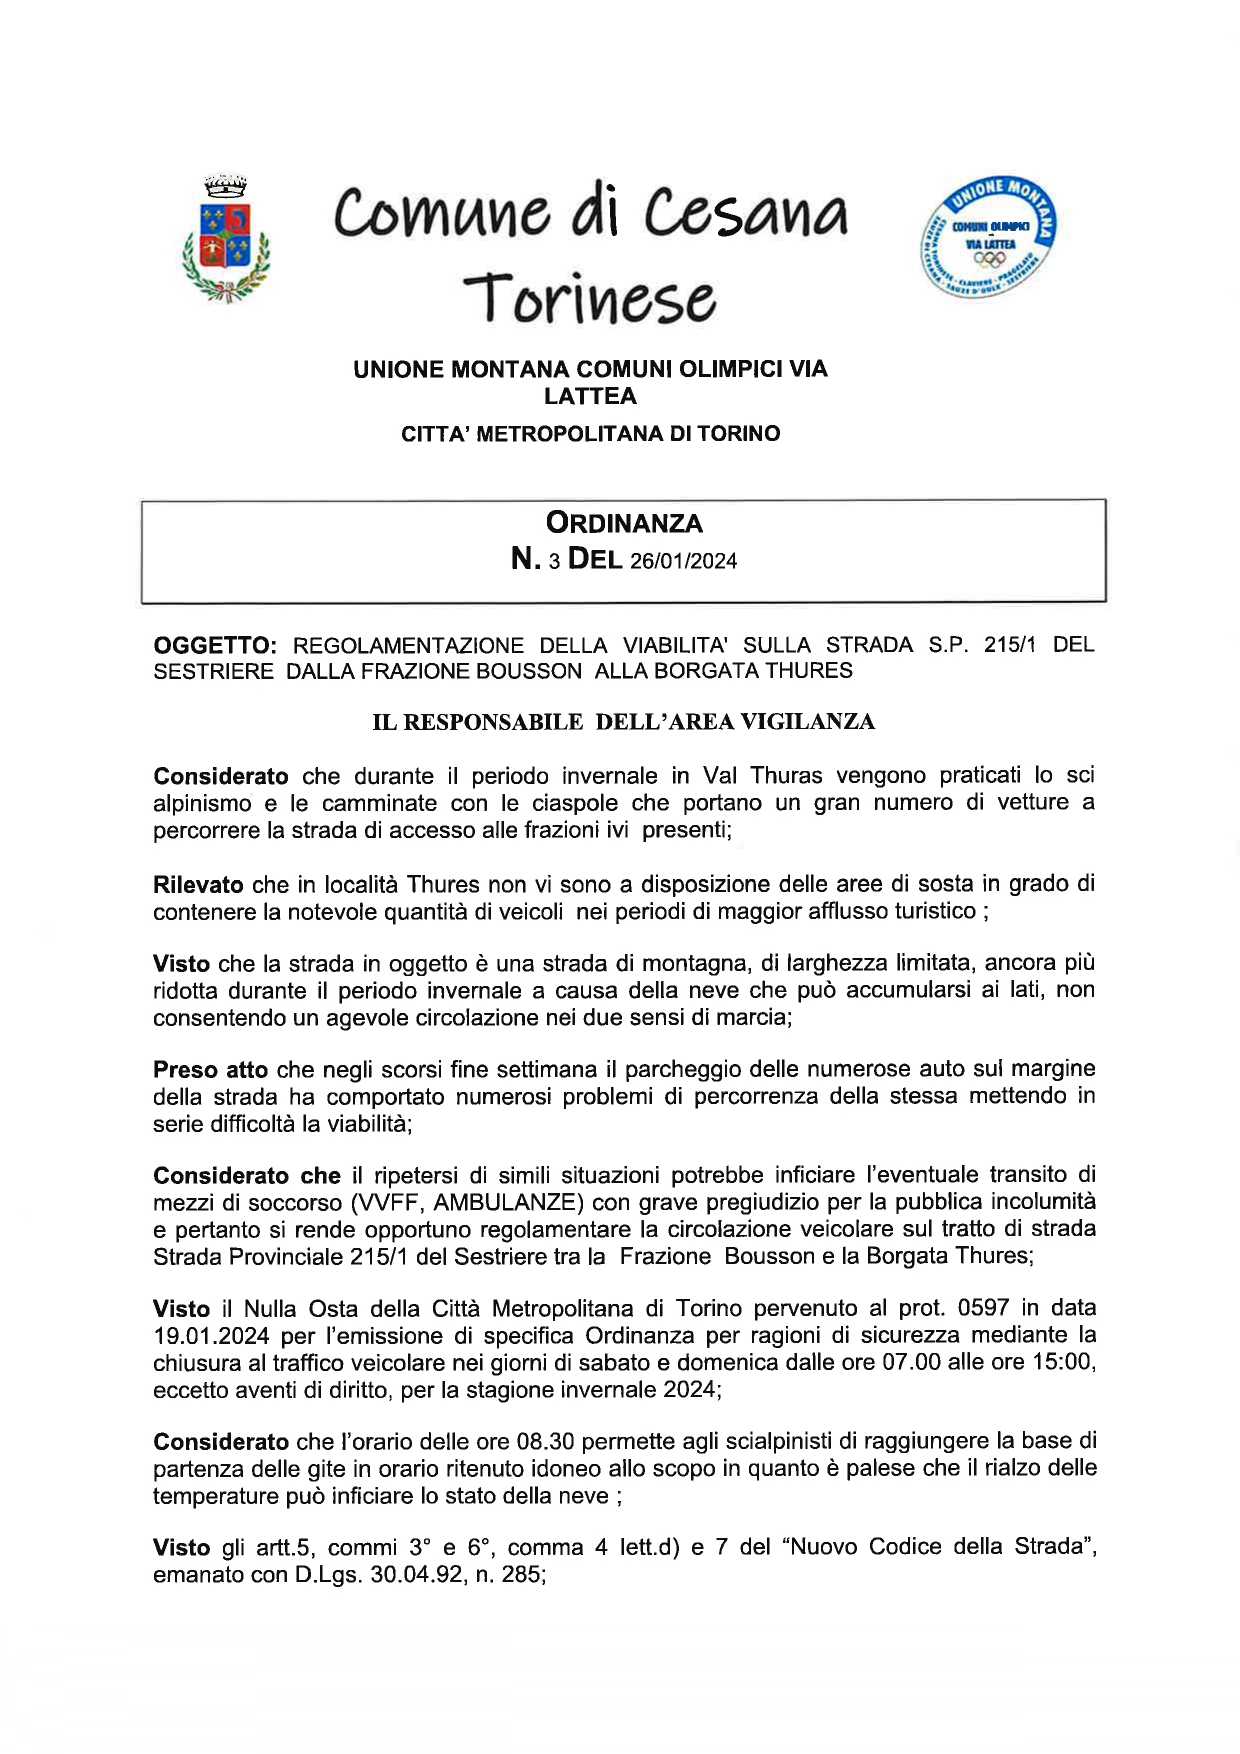 Ordinanza n.3 del 26/01/2024 – Regolamentazione della viabilità sulla strada S.P. 215 del Sestriere dalla frazione Bousson alla borgata Thures.